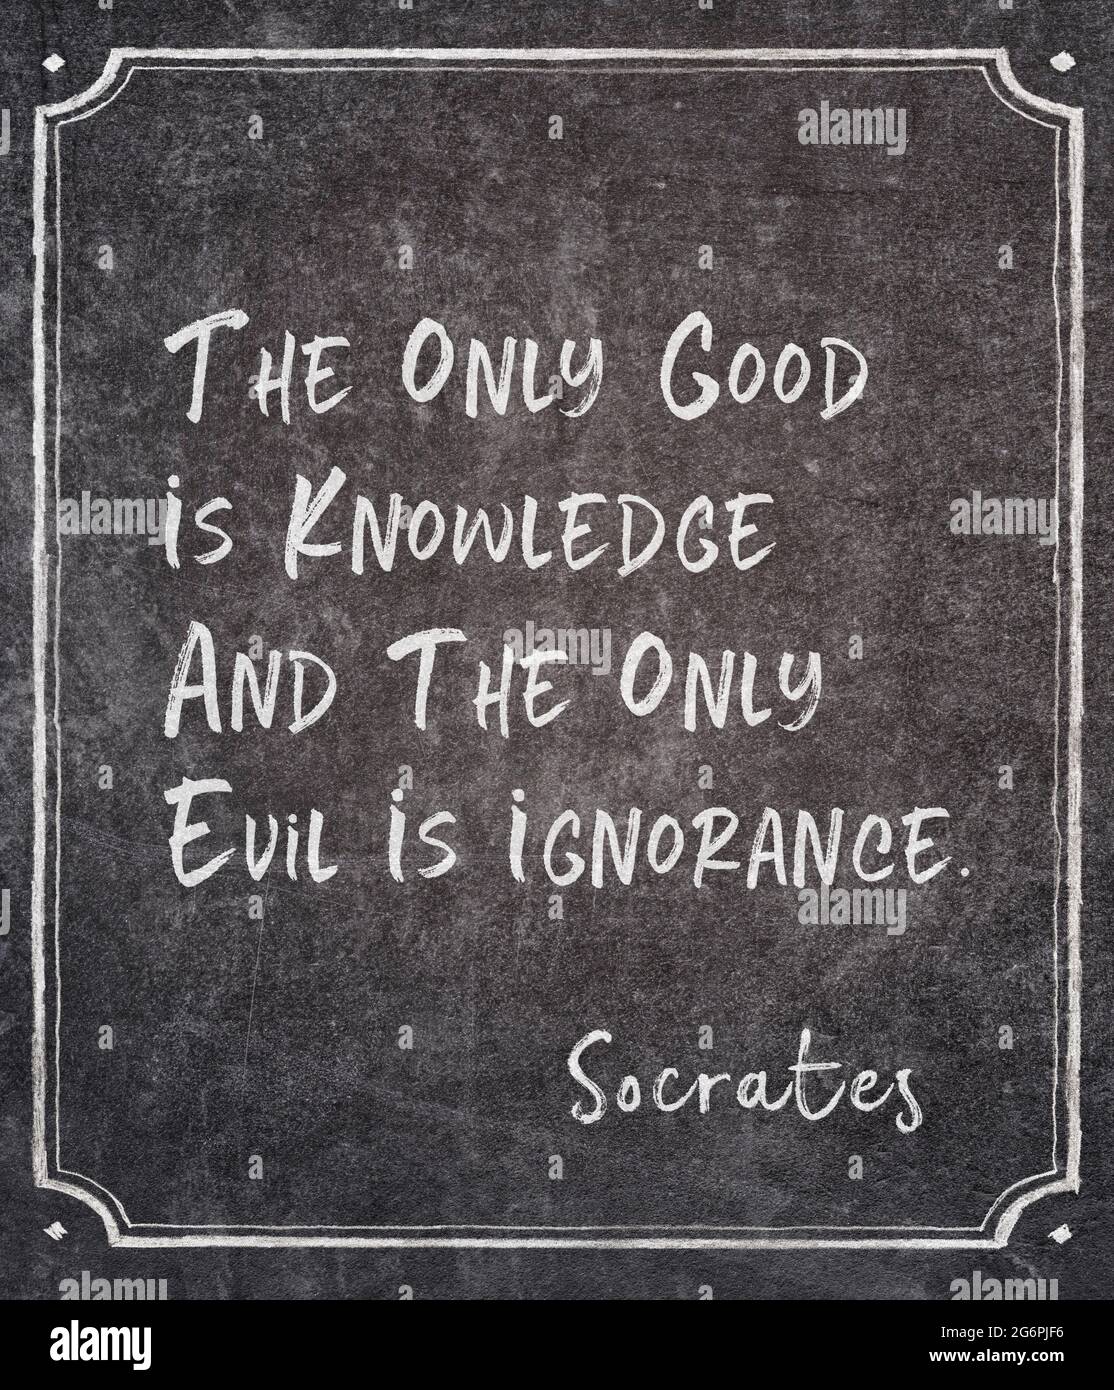 L'unico bene è la conoscenza e l'unico male è l'ignoranza - antico filosofo greco Socrates citazione scritta sulla lavagna incorniciata Foto Stock